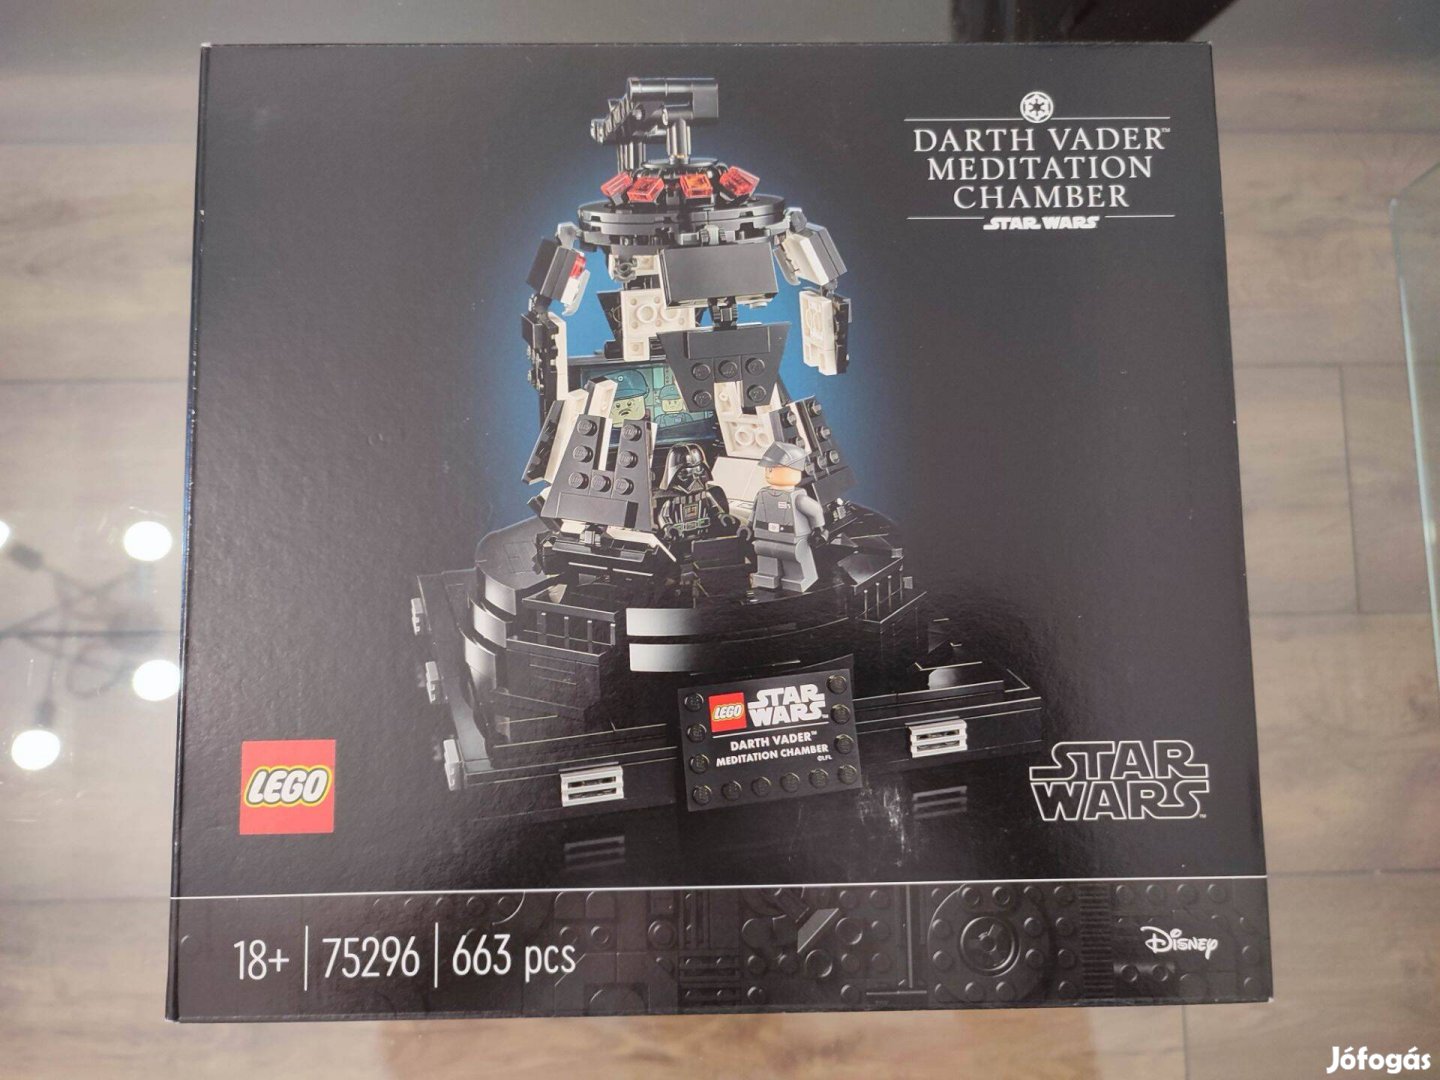 LEGO Star Wars 75296 Darth Vader Meditation Chamber - Új! Bontatlan!